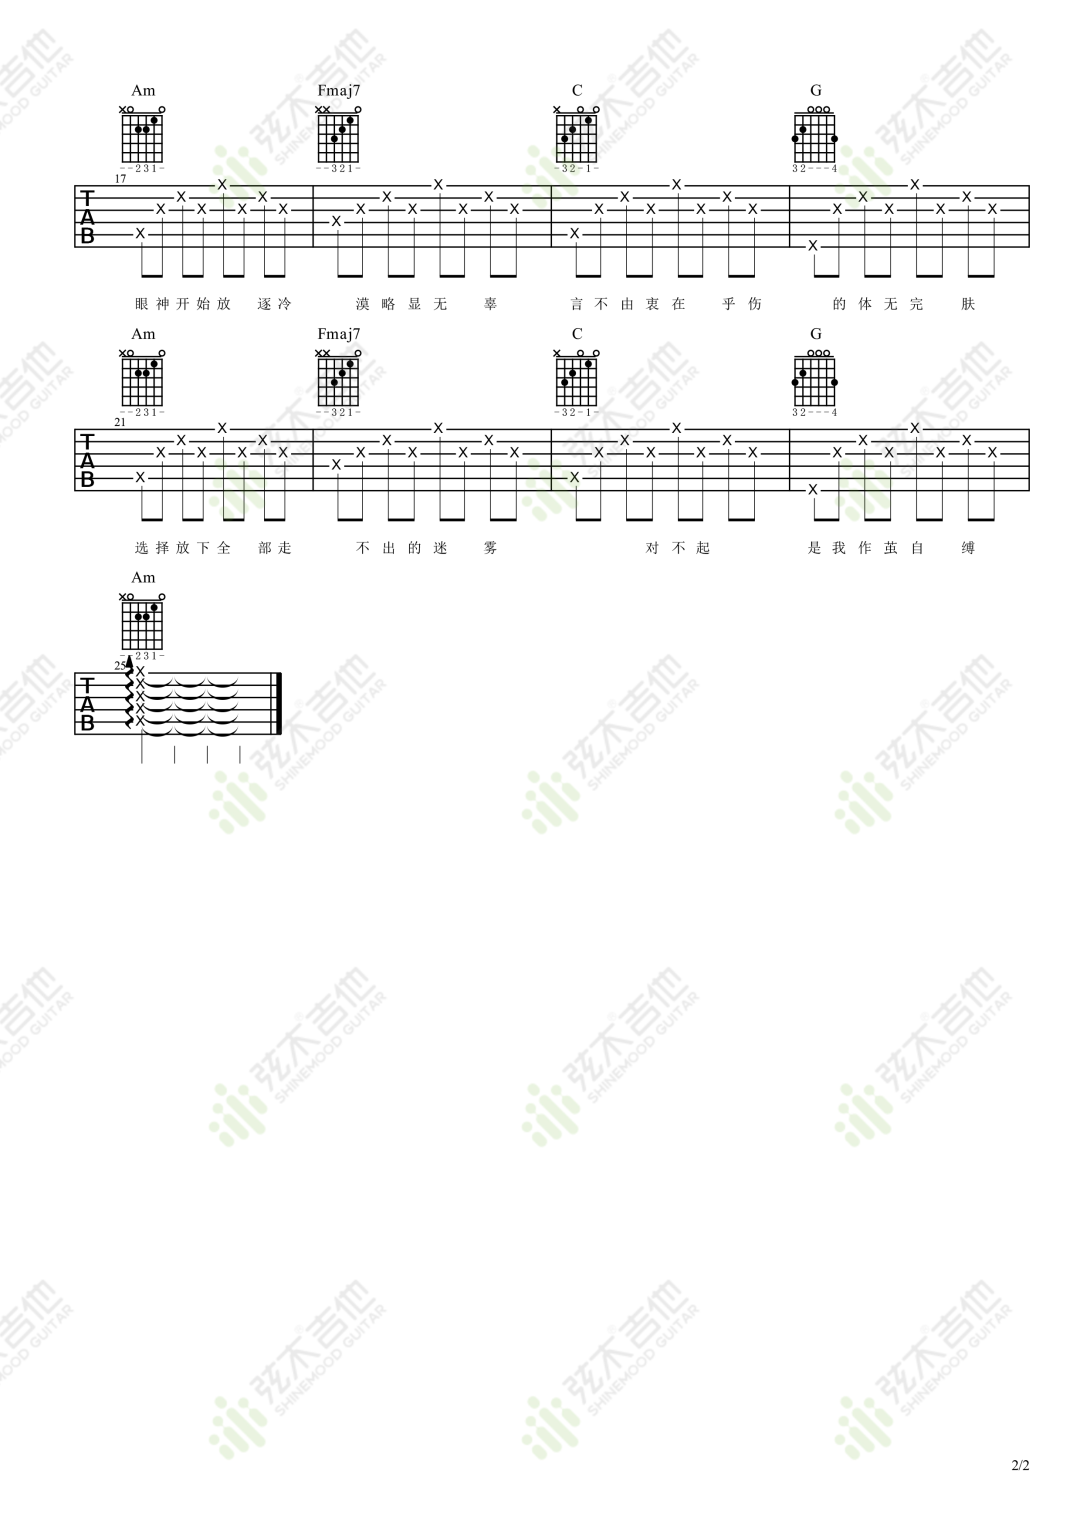 王忻辰,苏星婕《清空》吉他谱(C调)-Guitar Music Score